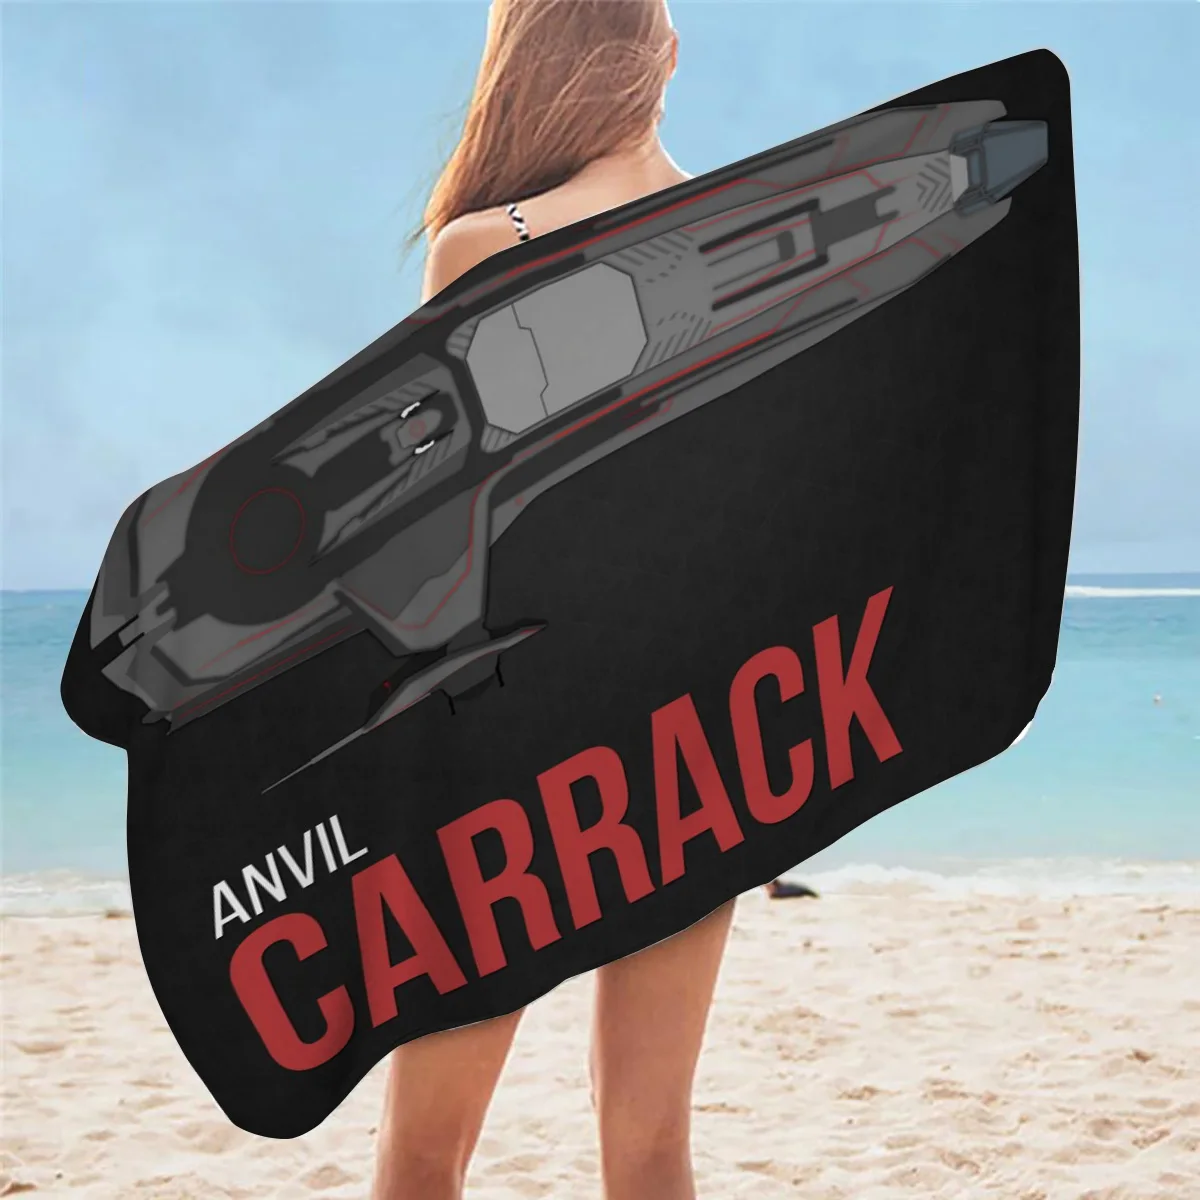 Наковальня Carrack модные мягкие банные полотенца с 3D рисунком удобное пляжное